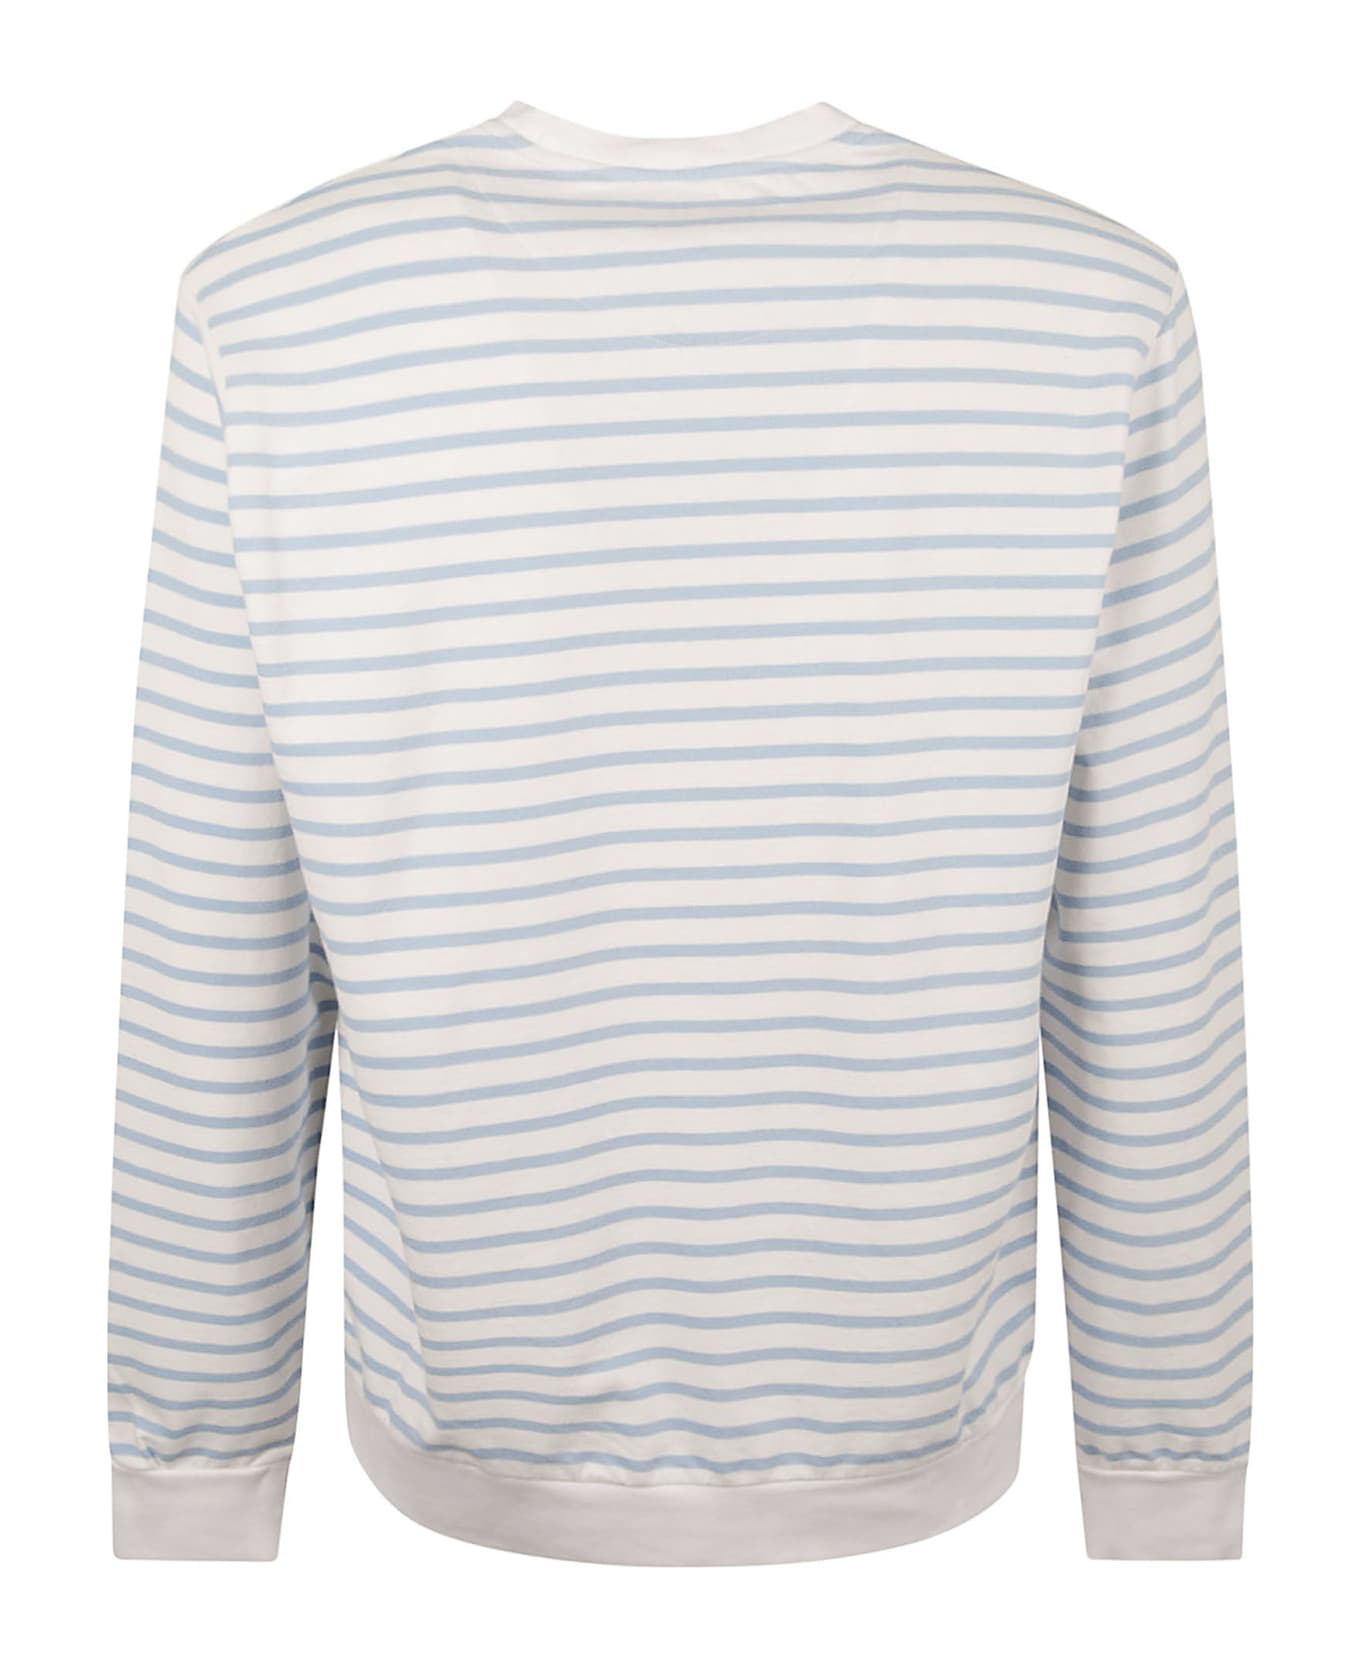 Vilebrequin Logo Detail Striped Sweatshirt - White/Azzure フリース